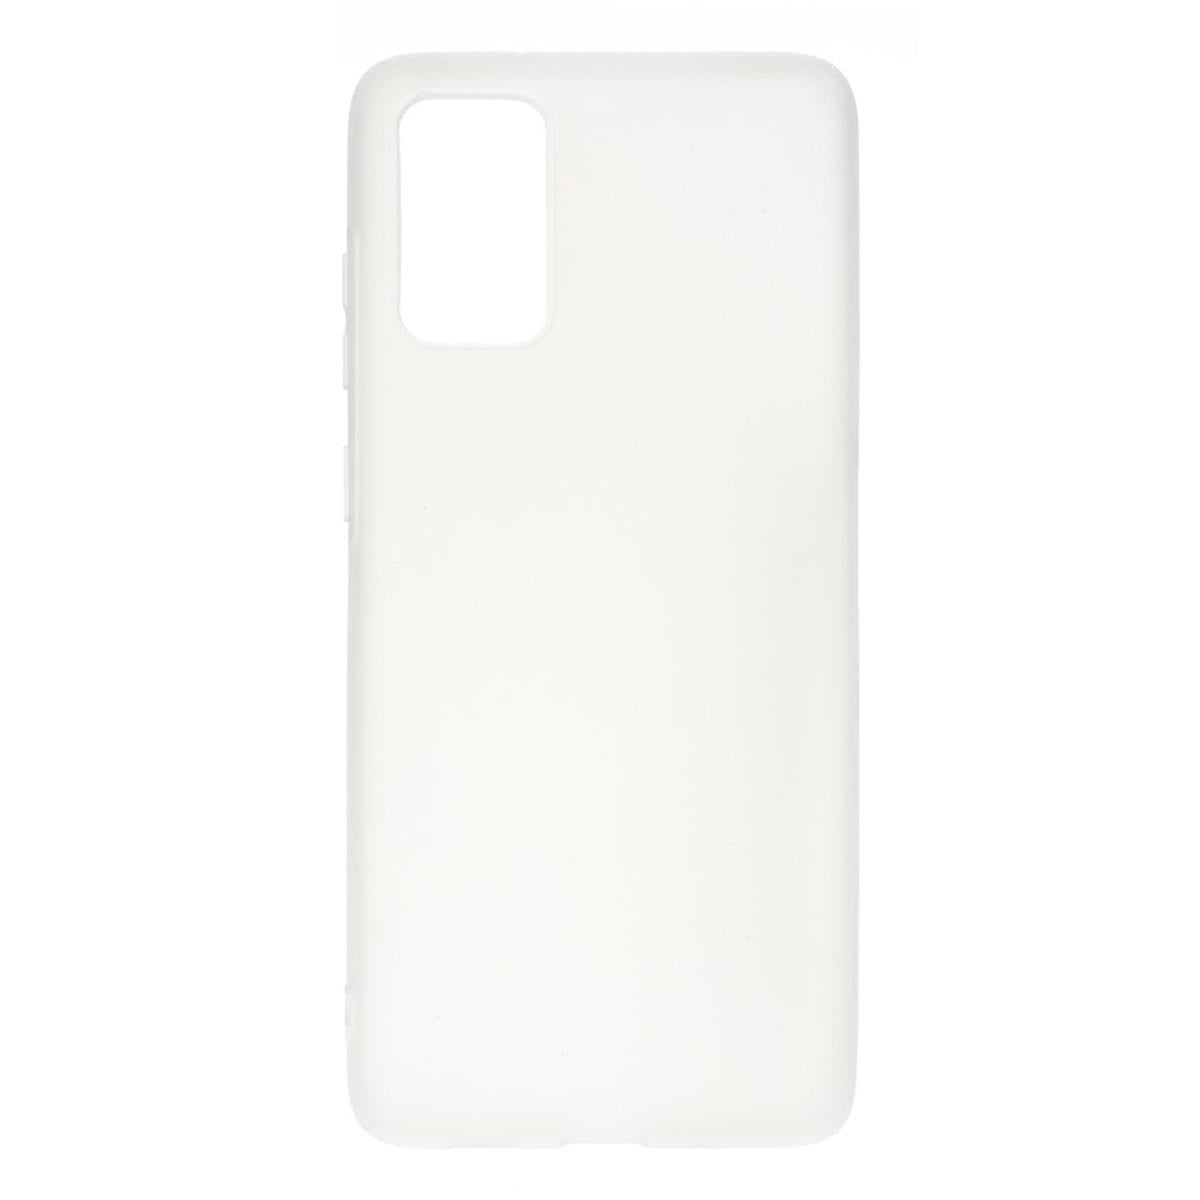 Hülle für Samsung Galaxy M30s Handyhülle Silikon Case Cover Bumper Matt Weiß